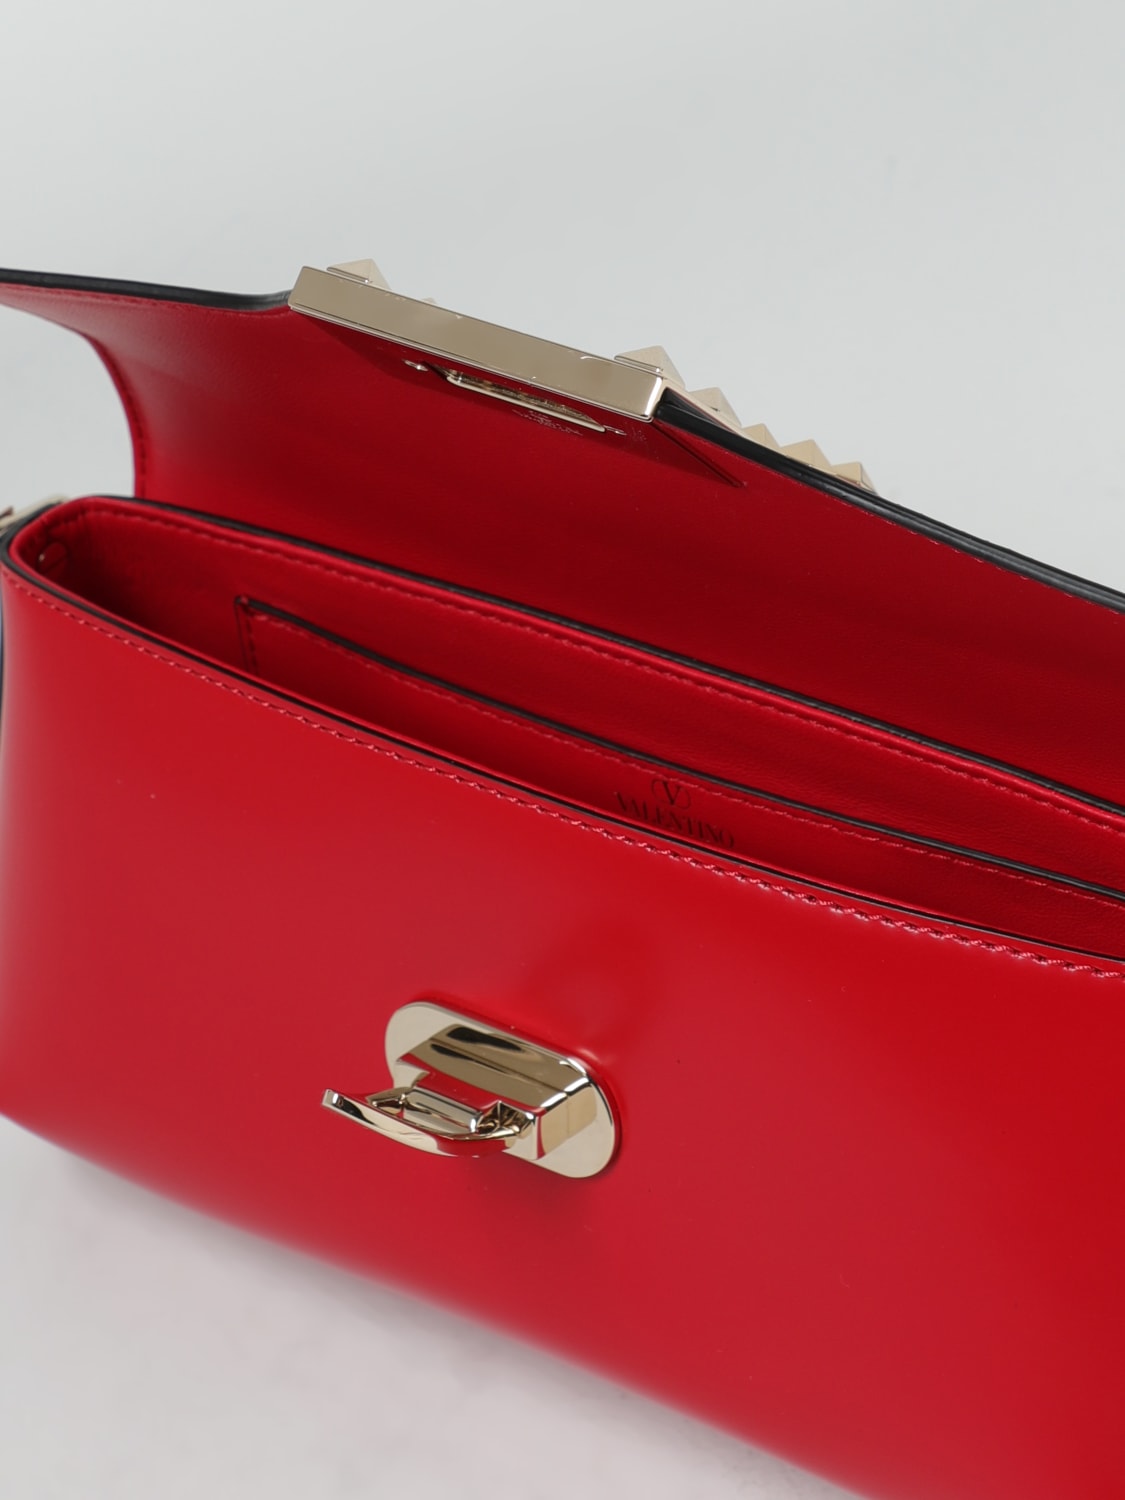 Valentino Garavani Rockstud shoulder bag RED Leather